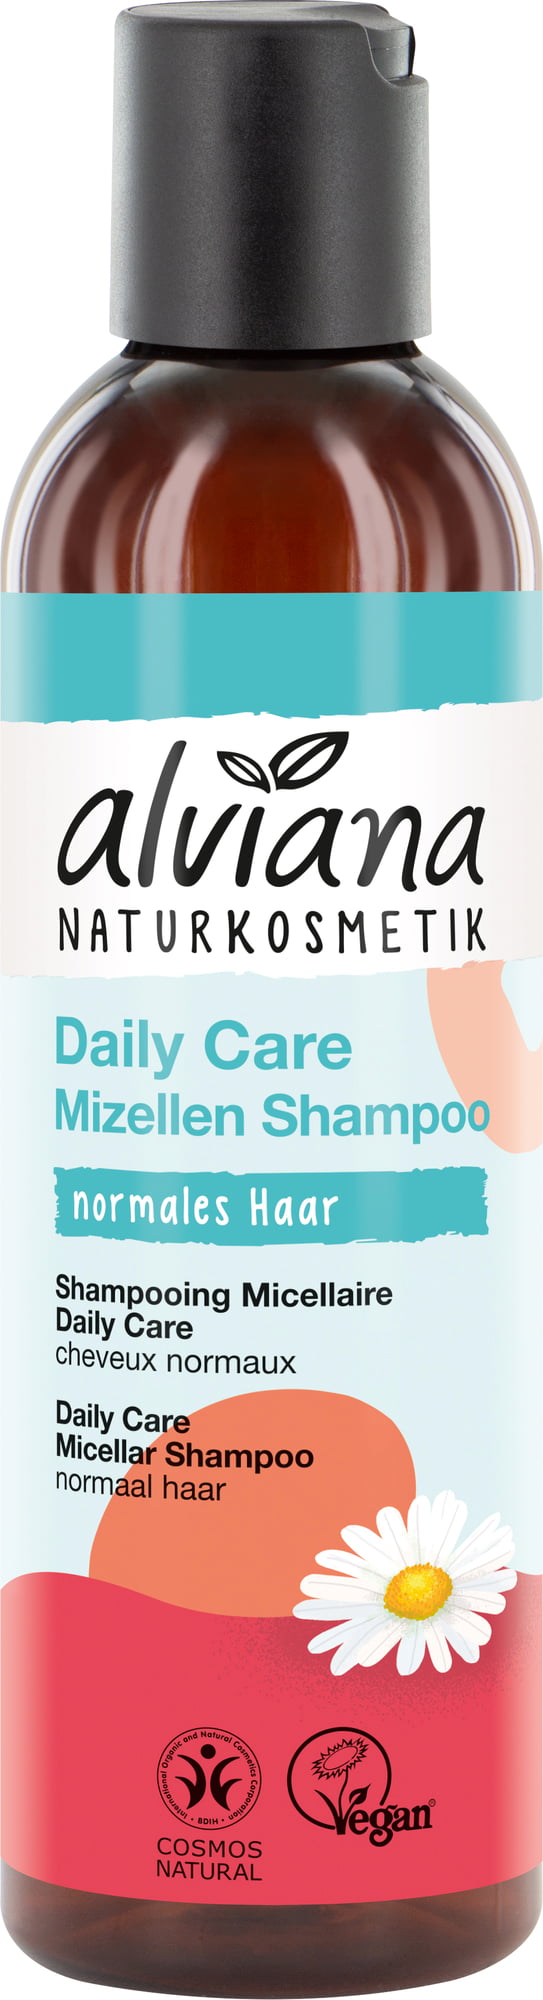 alviana Daily Care Mizellen Shampoo 200ml